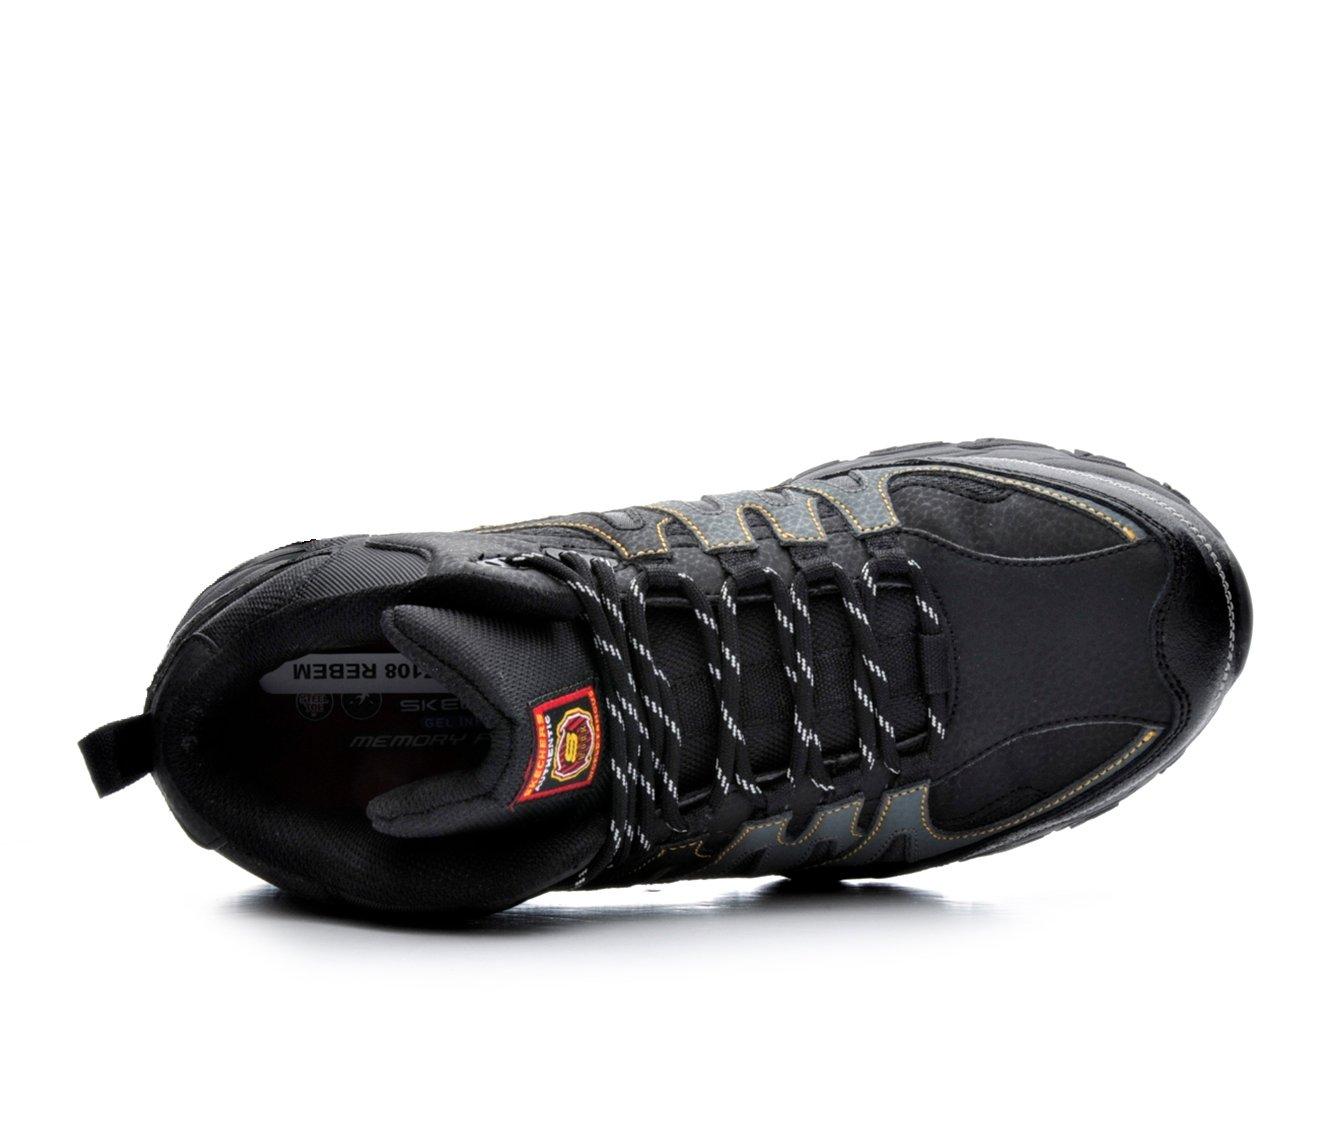 S Sport By Skechers Men's Steel Toe Leather Work Boots - Black 7